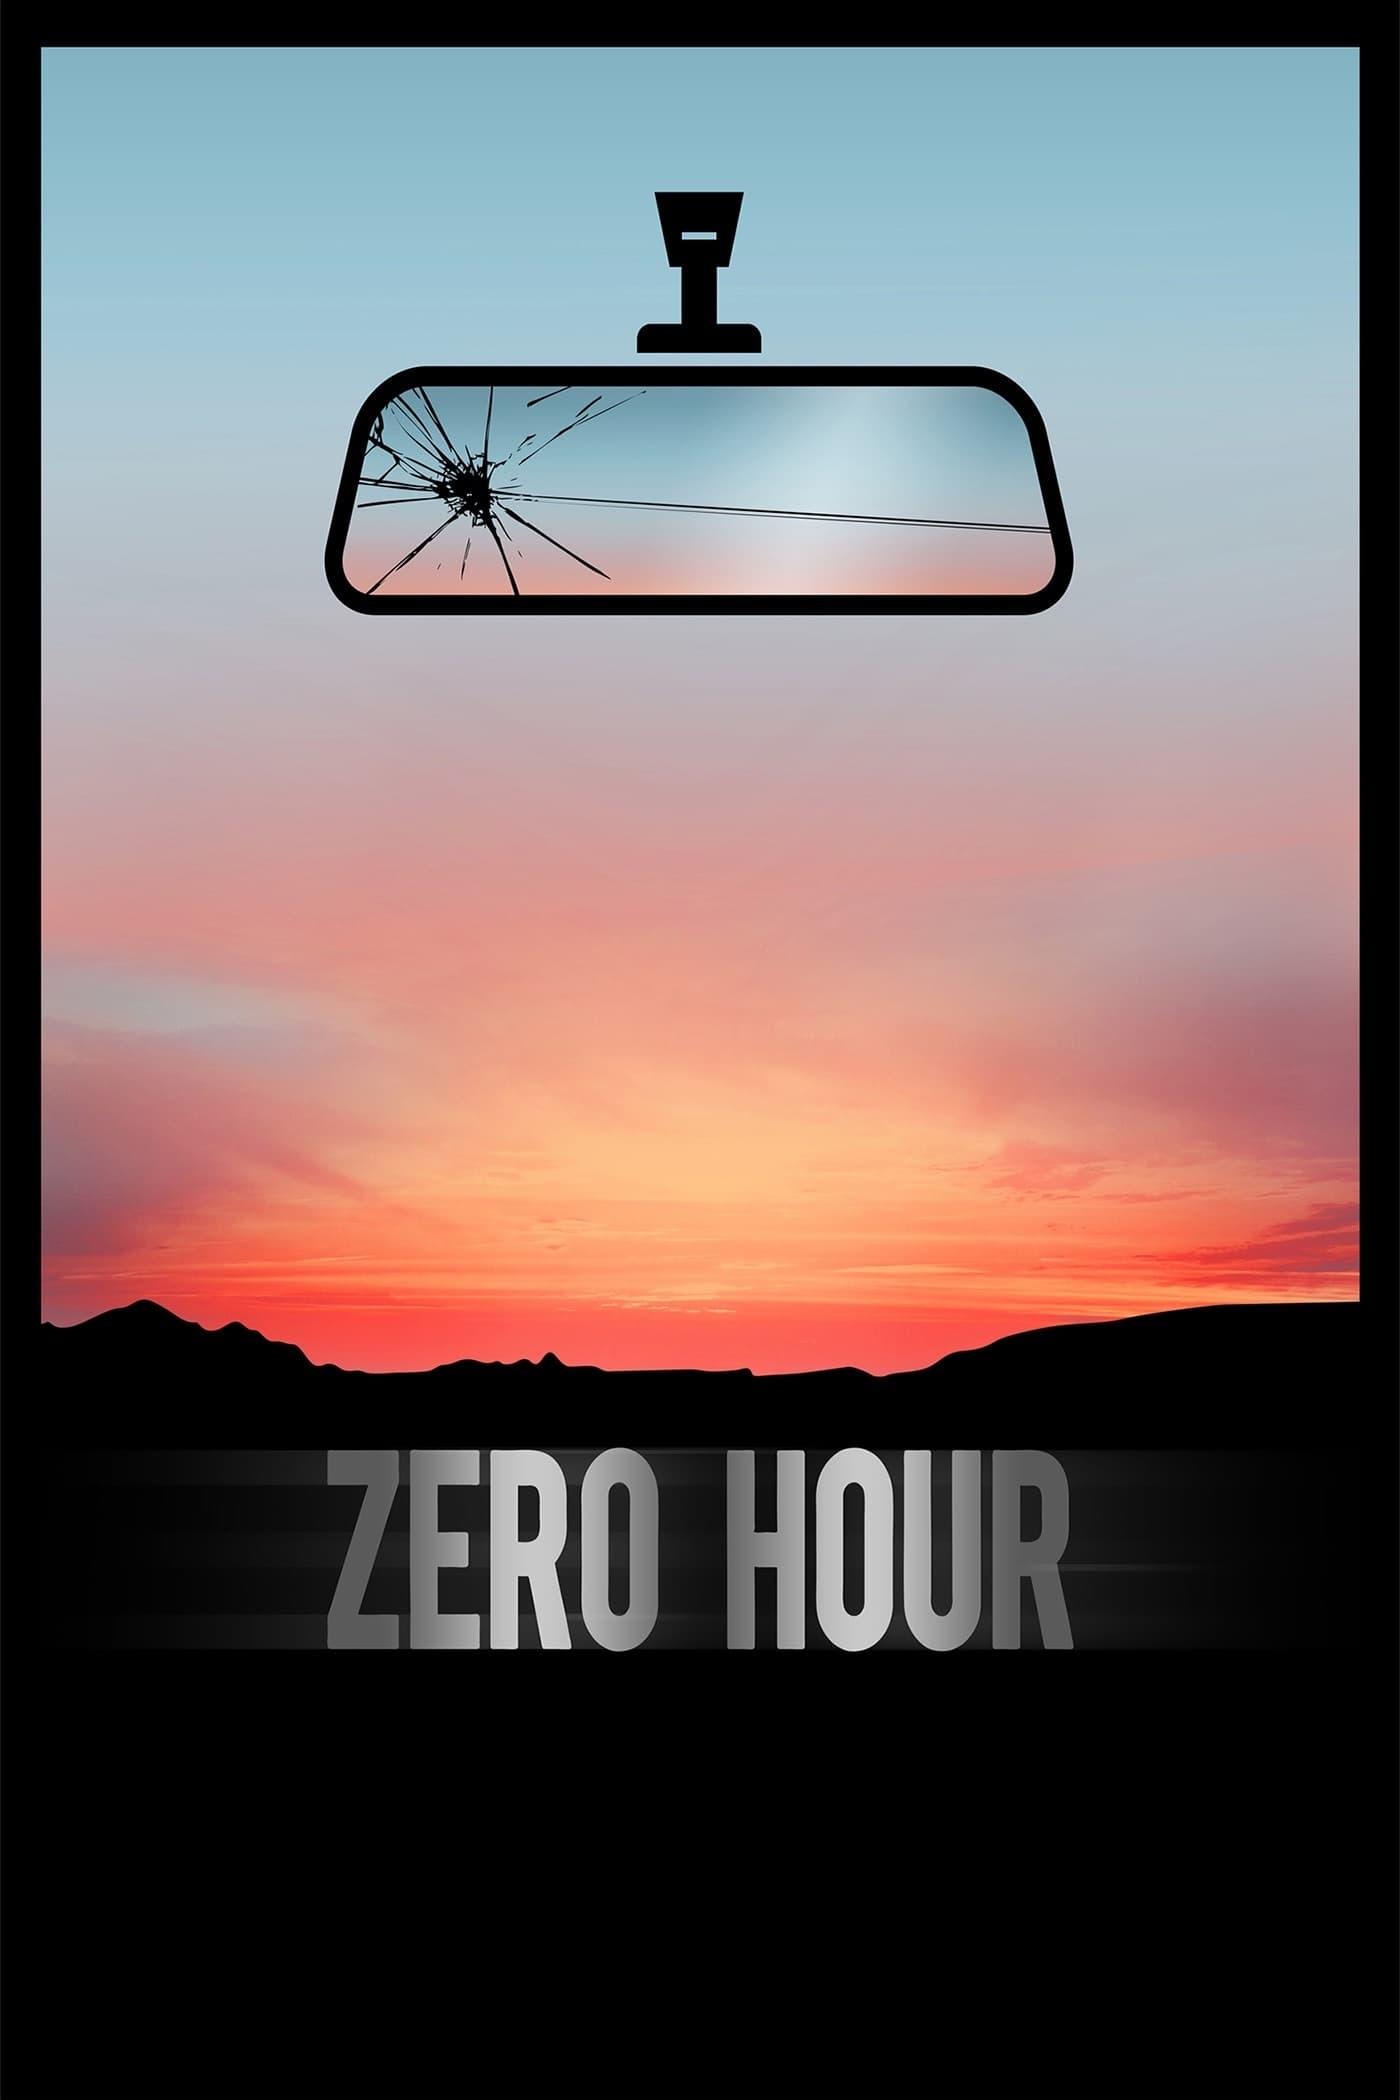 The Zero Hour poster